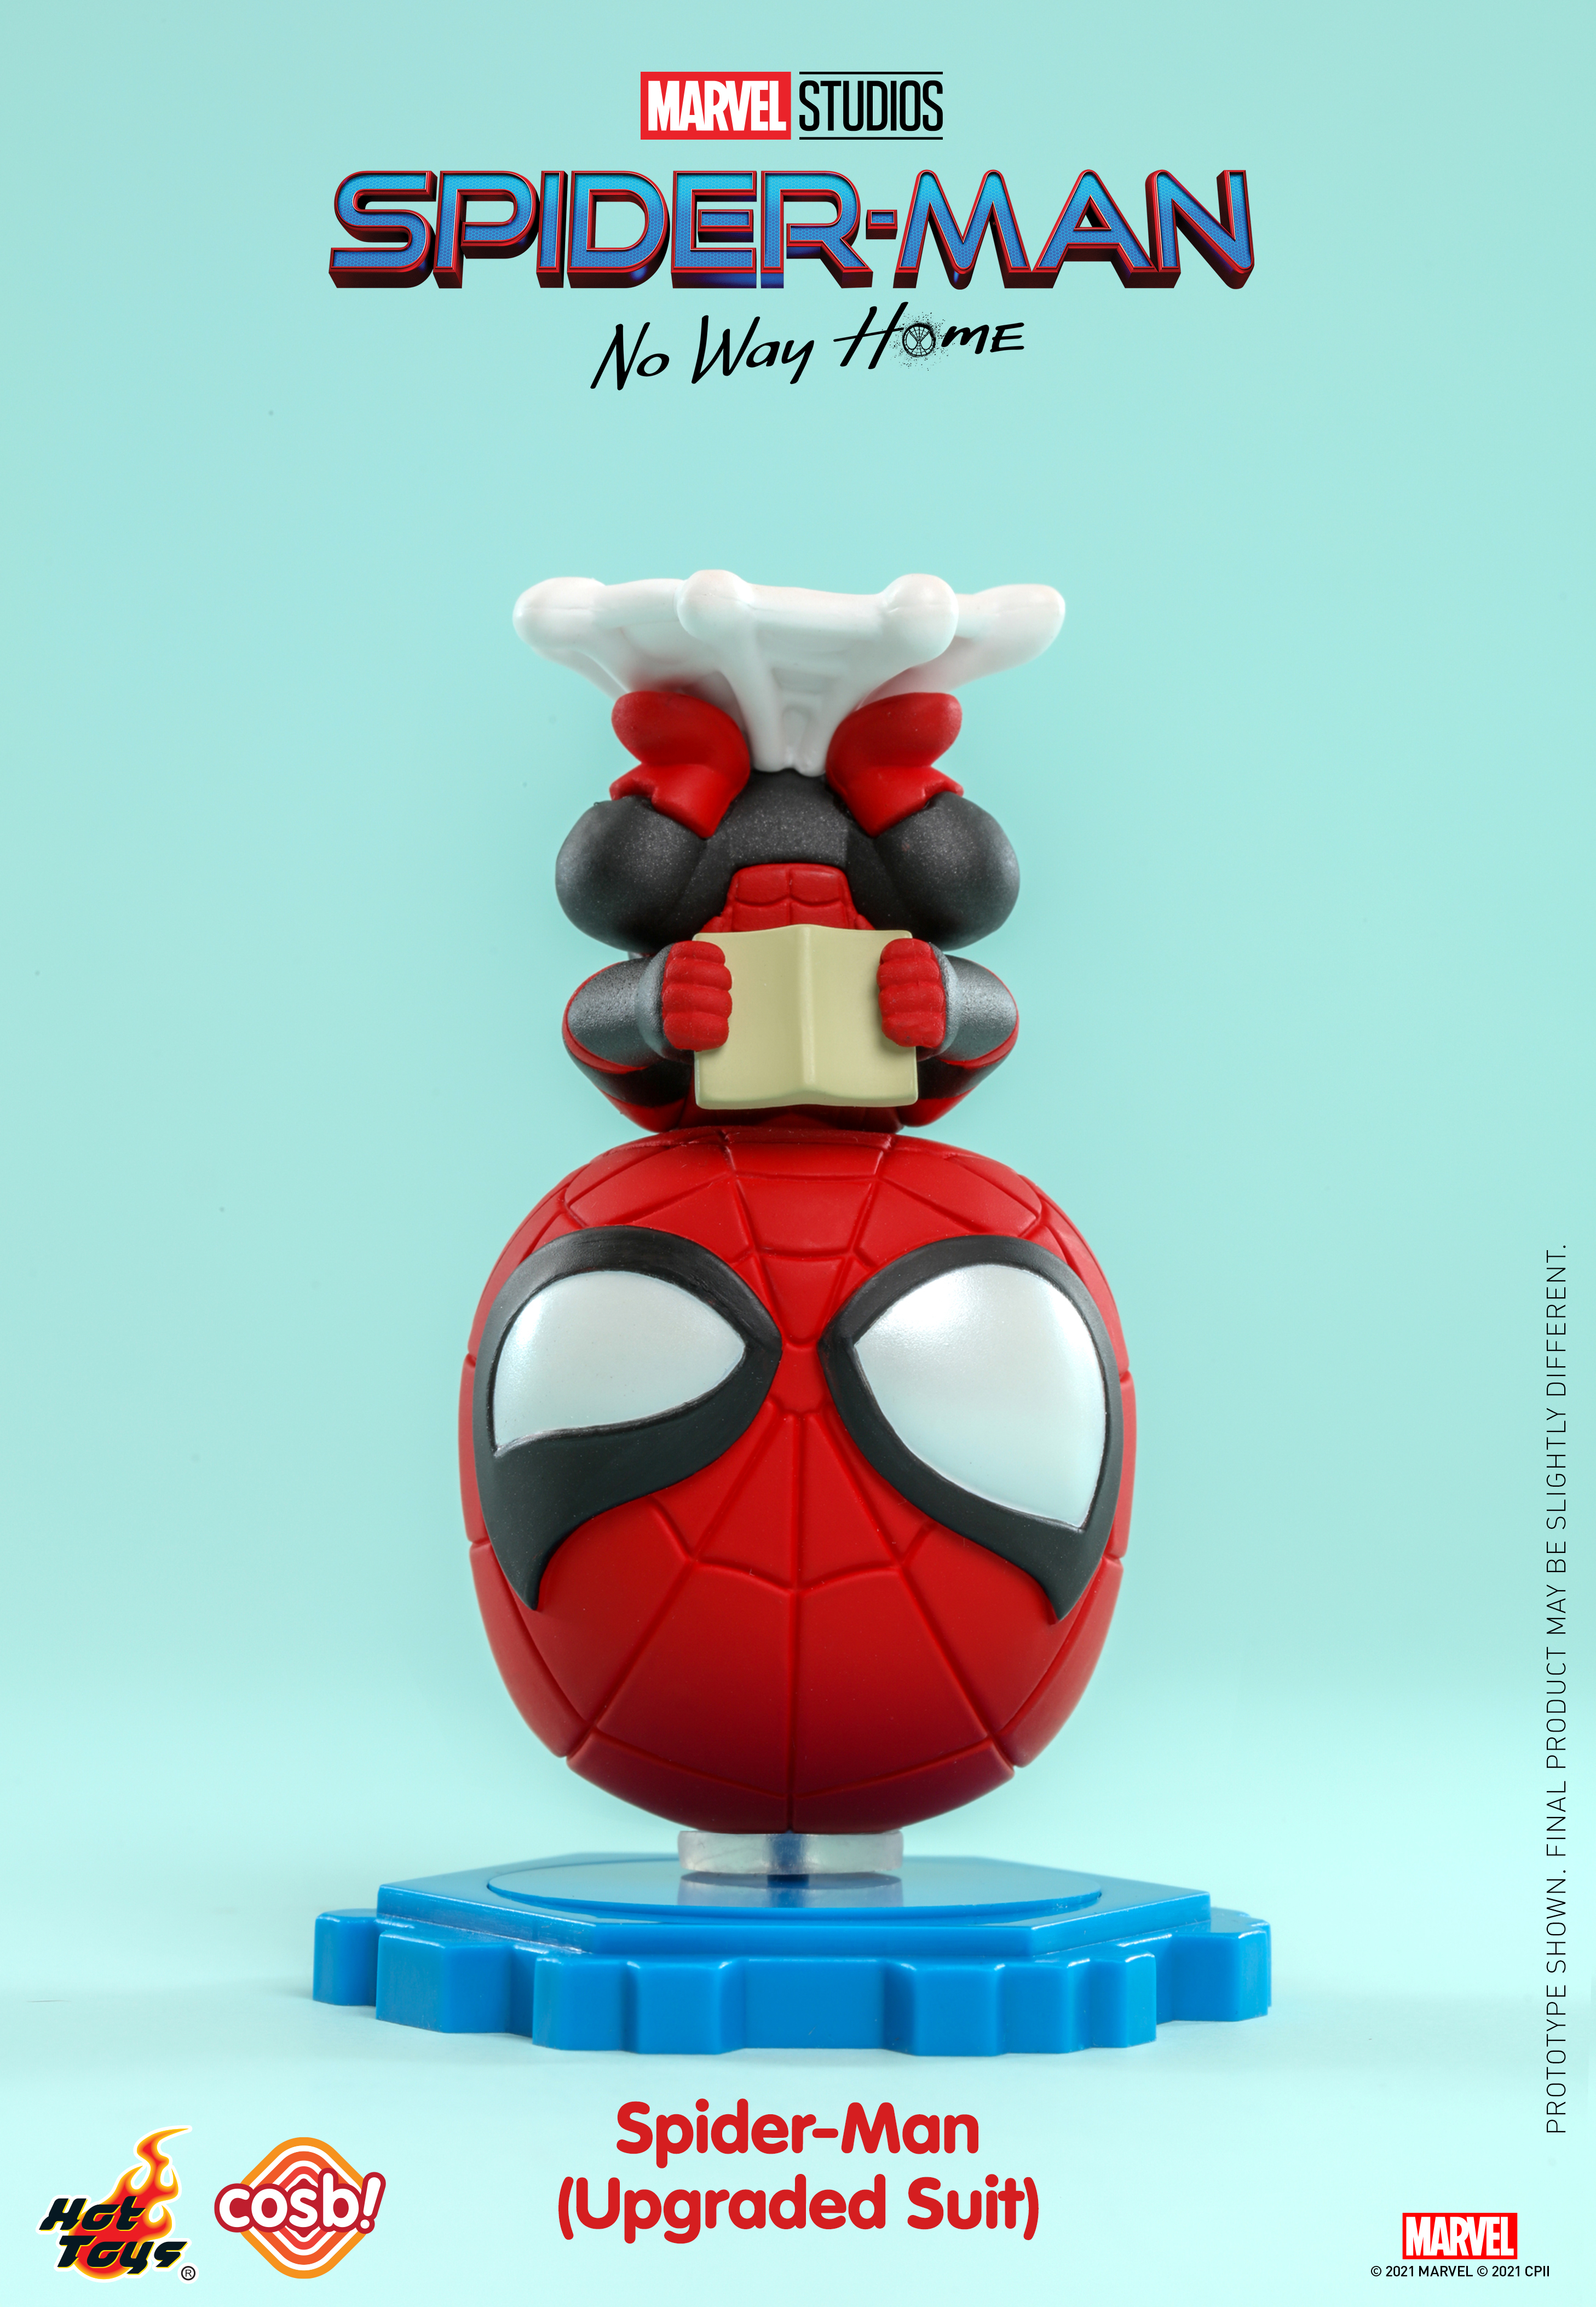 Hot Toys - Spider-Man - No Way Home Cosbi_PR3